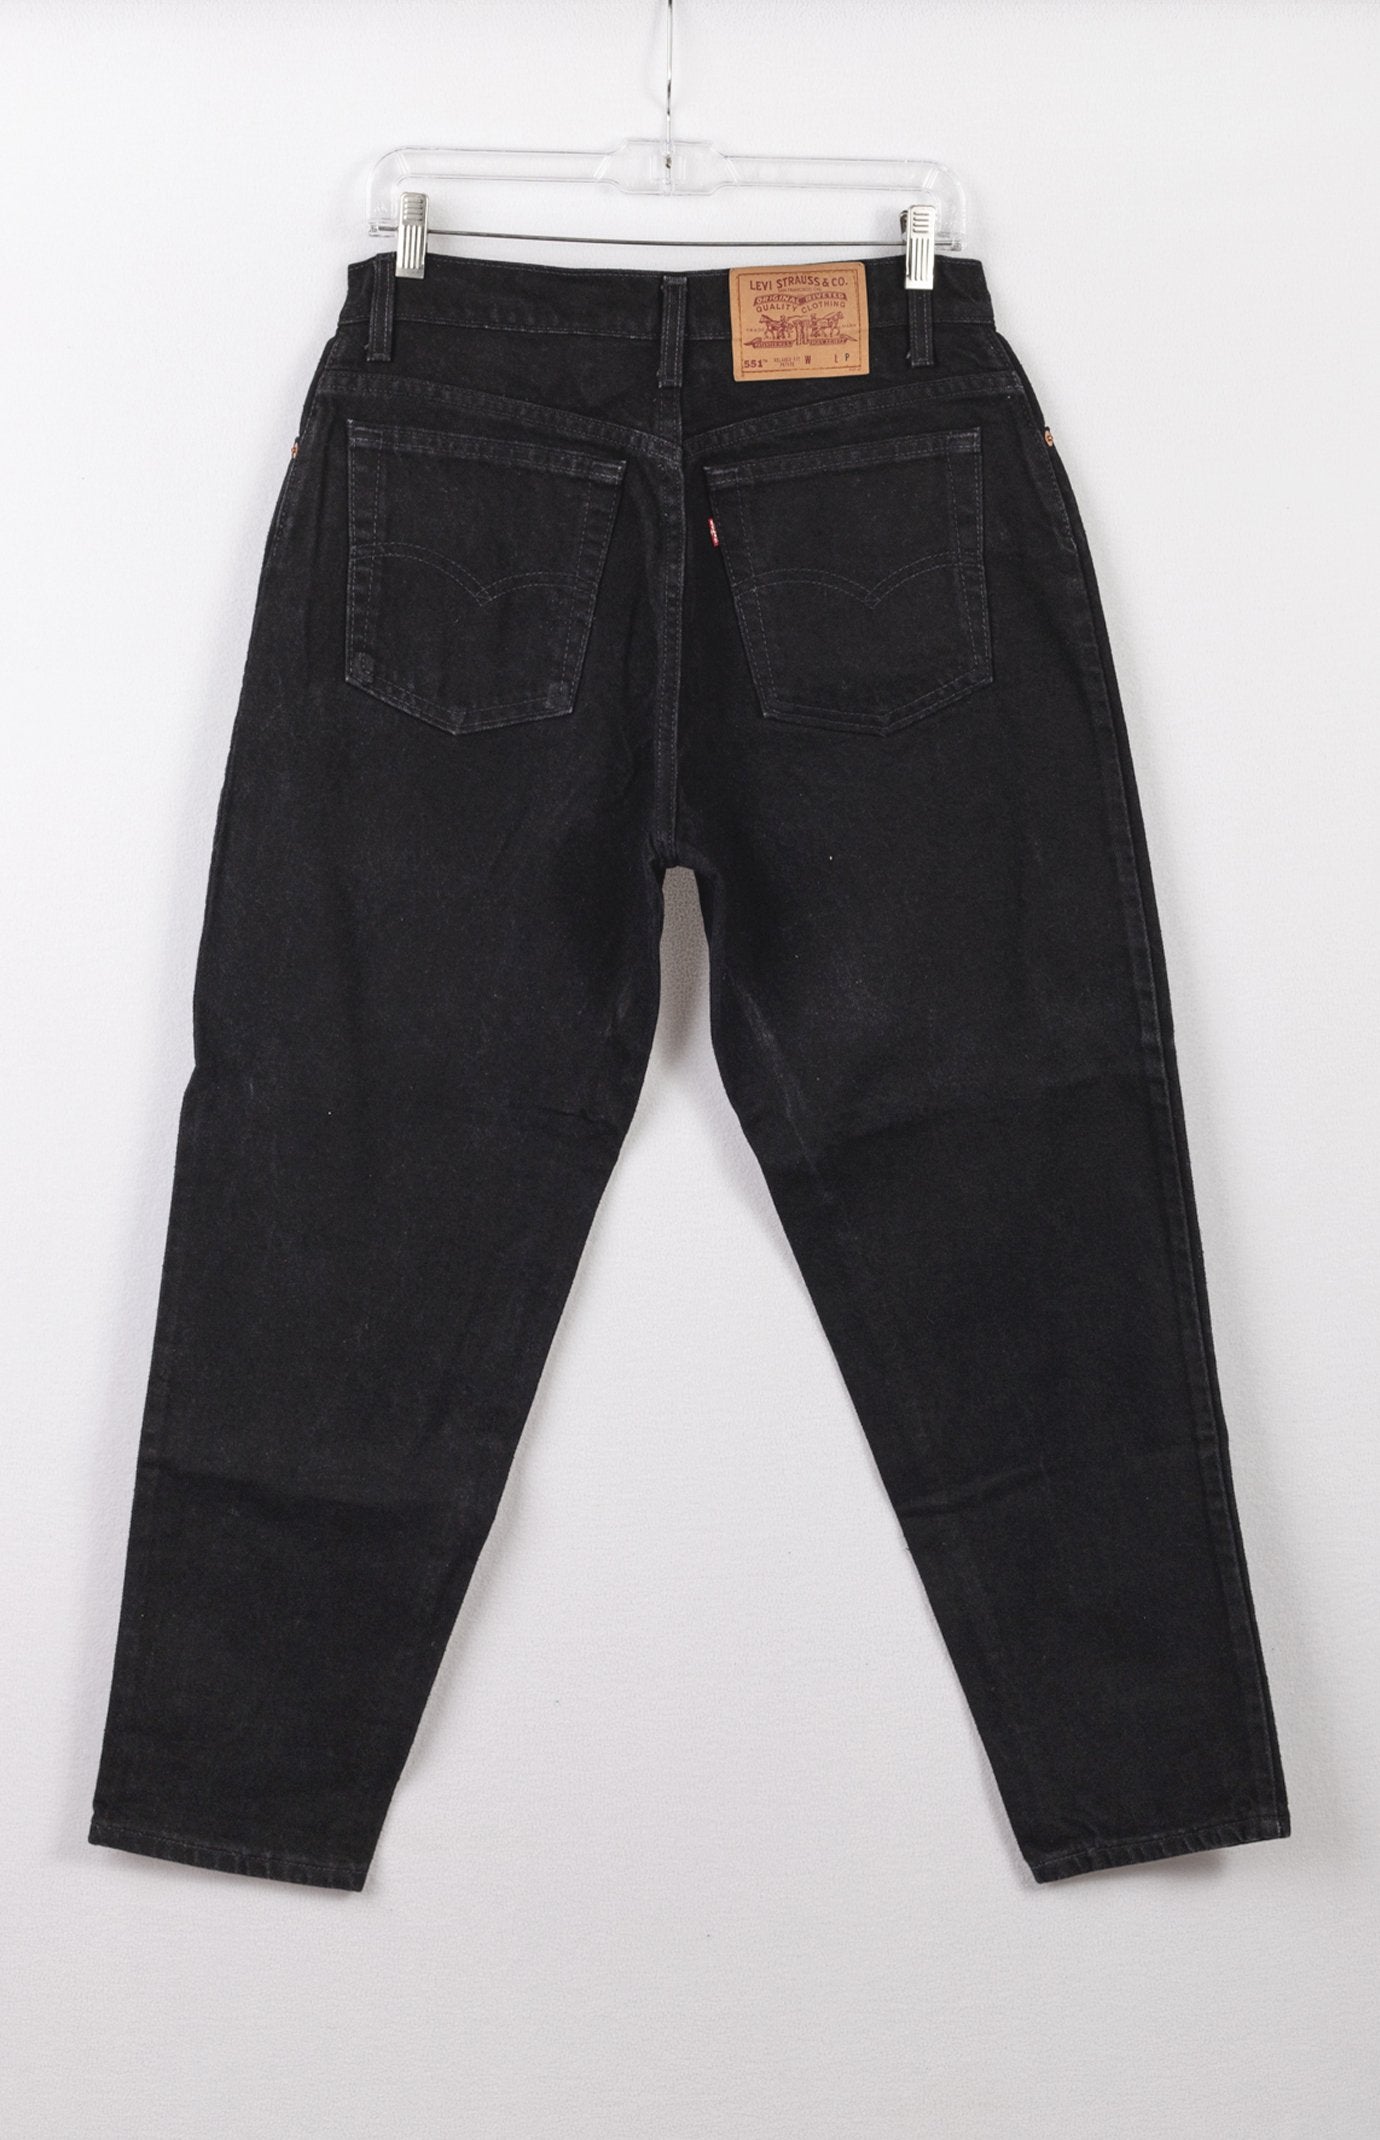 Levi's 551 Jeans, Vintage Levis Jeans